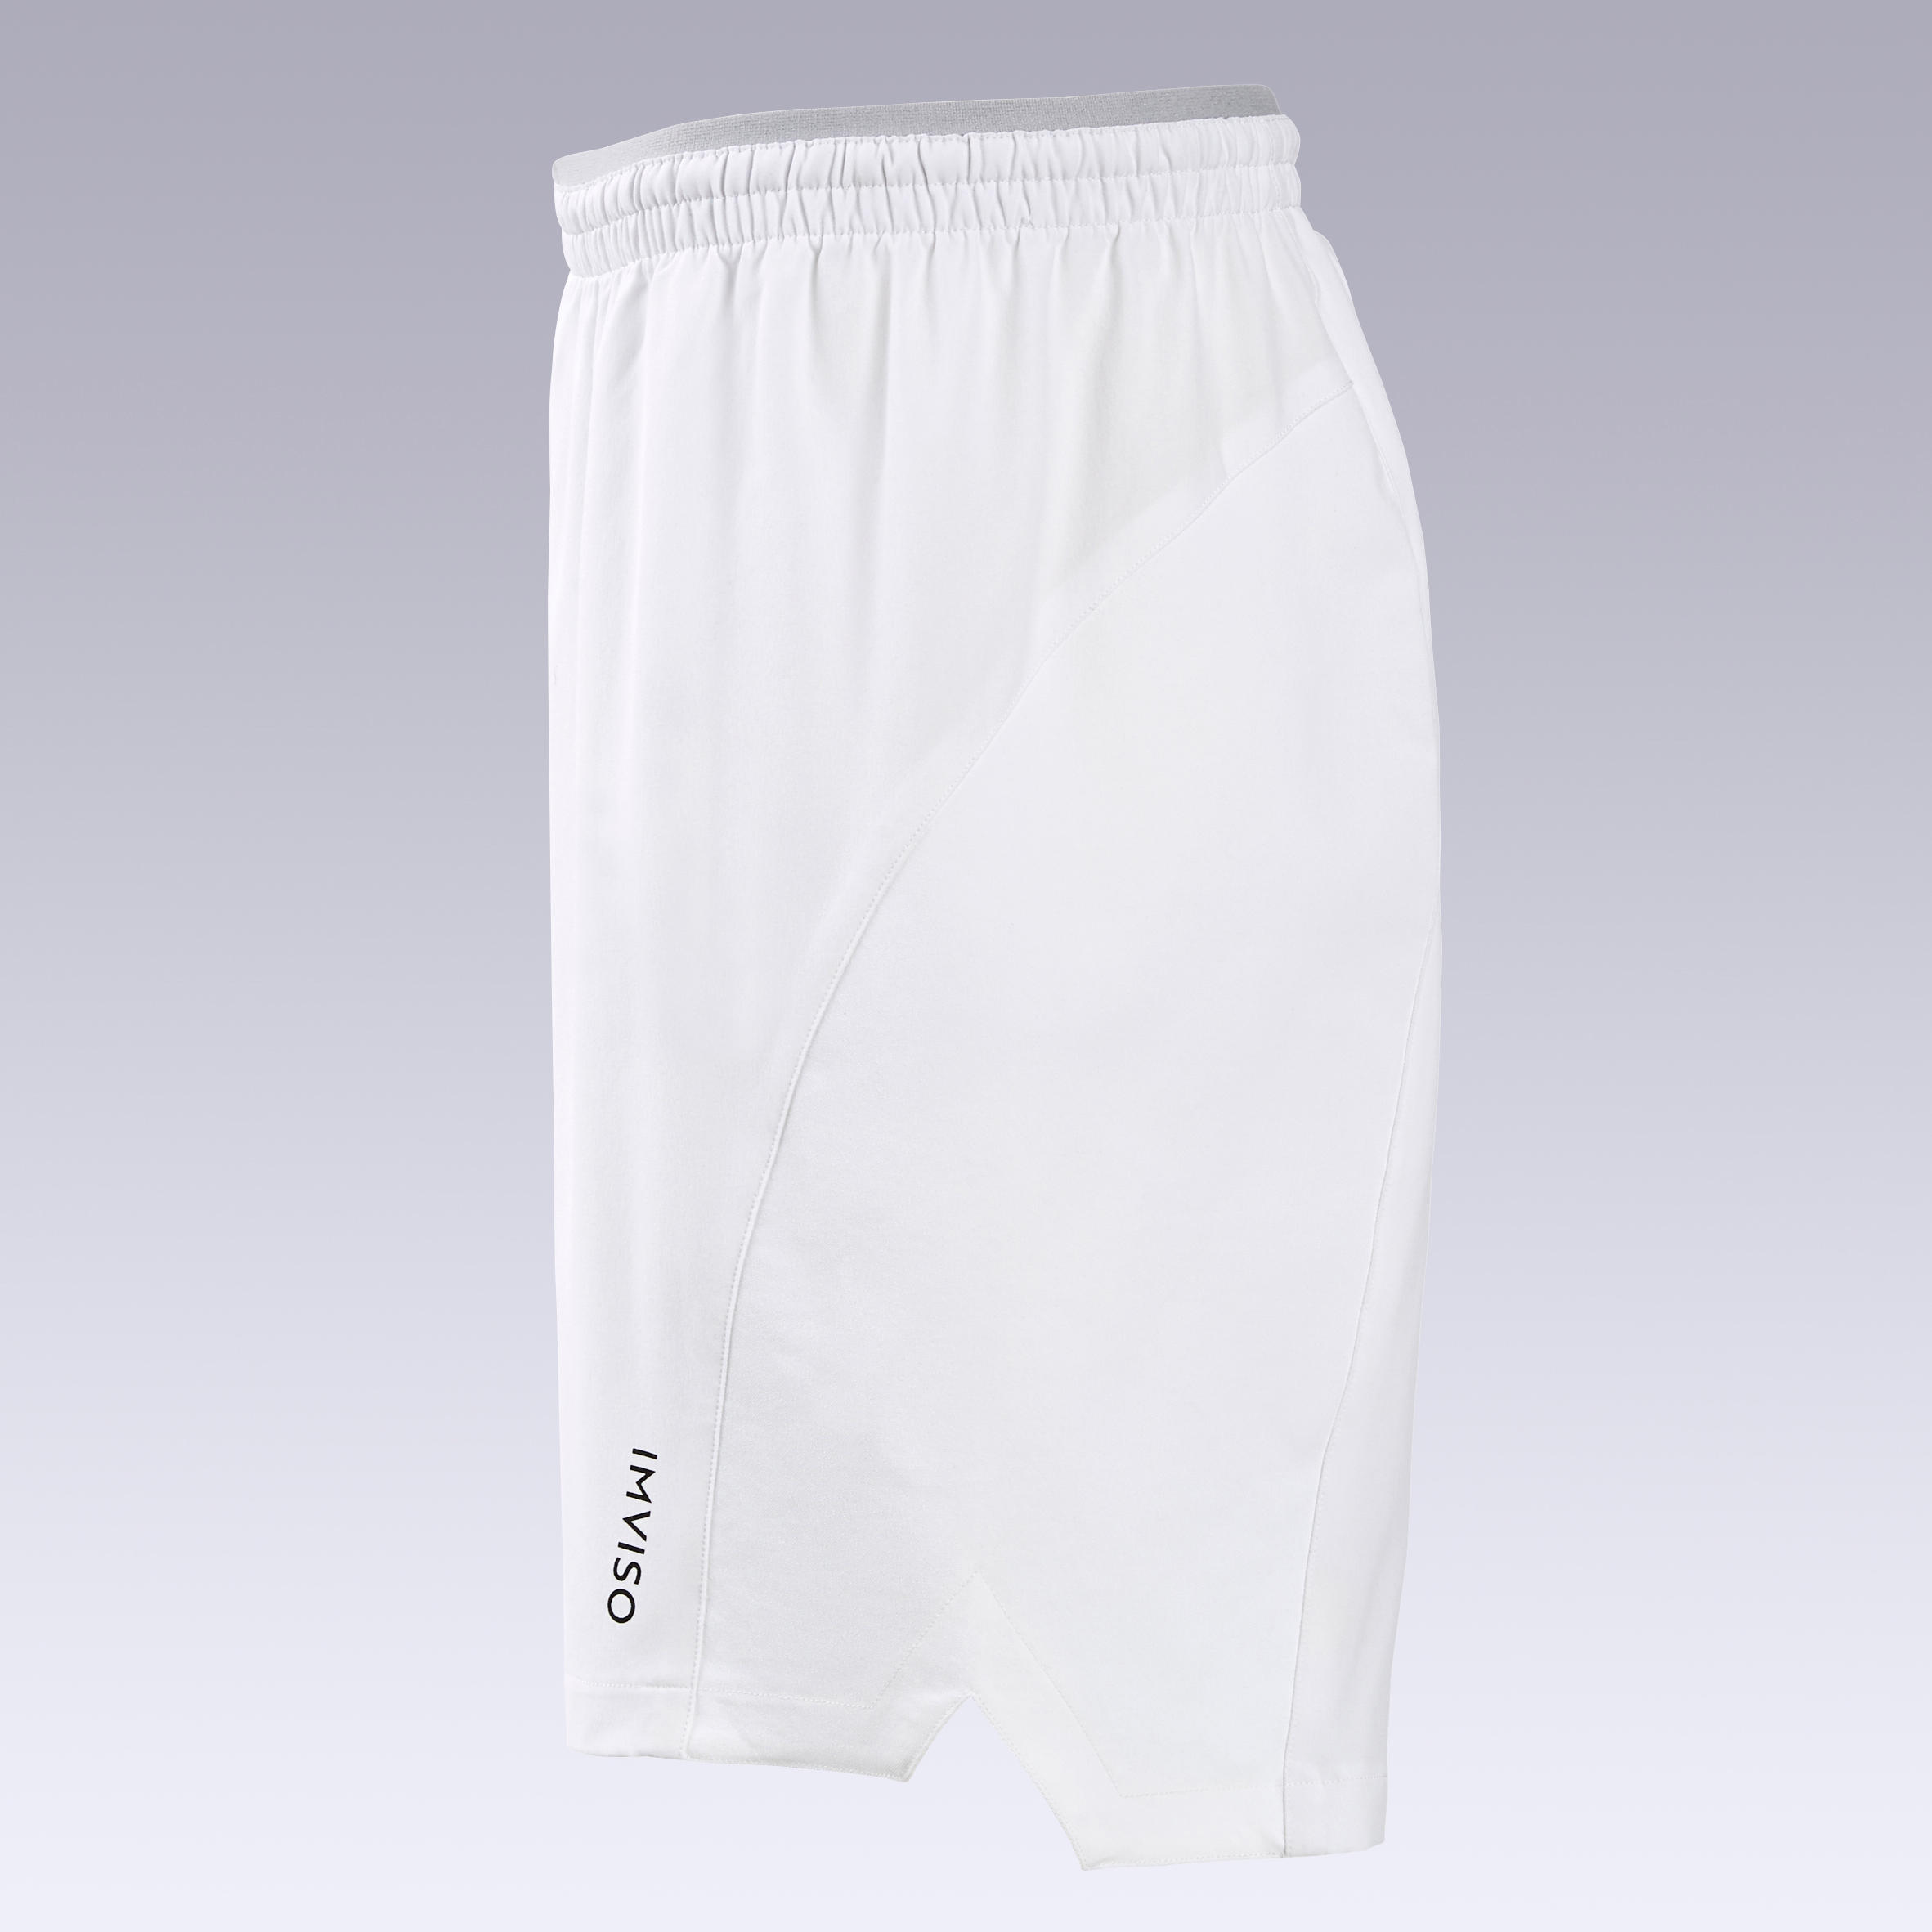 Men's Futsal Shorts - White 4/7